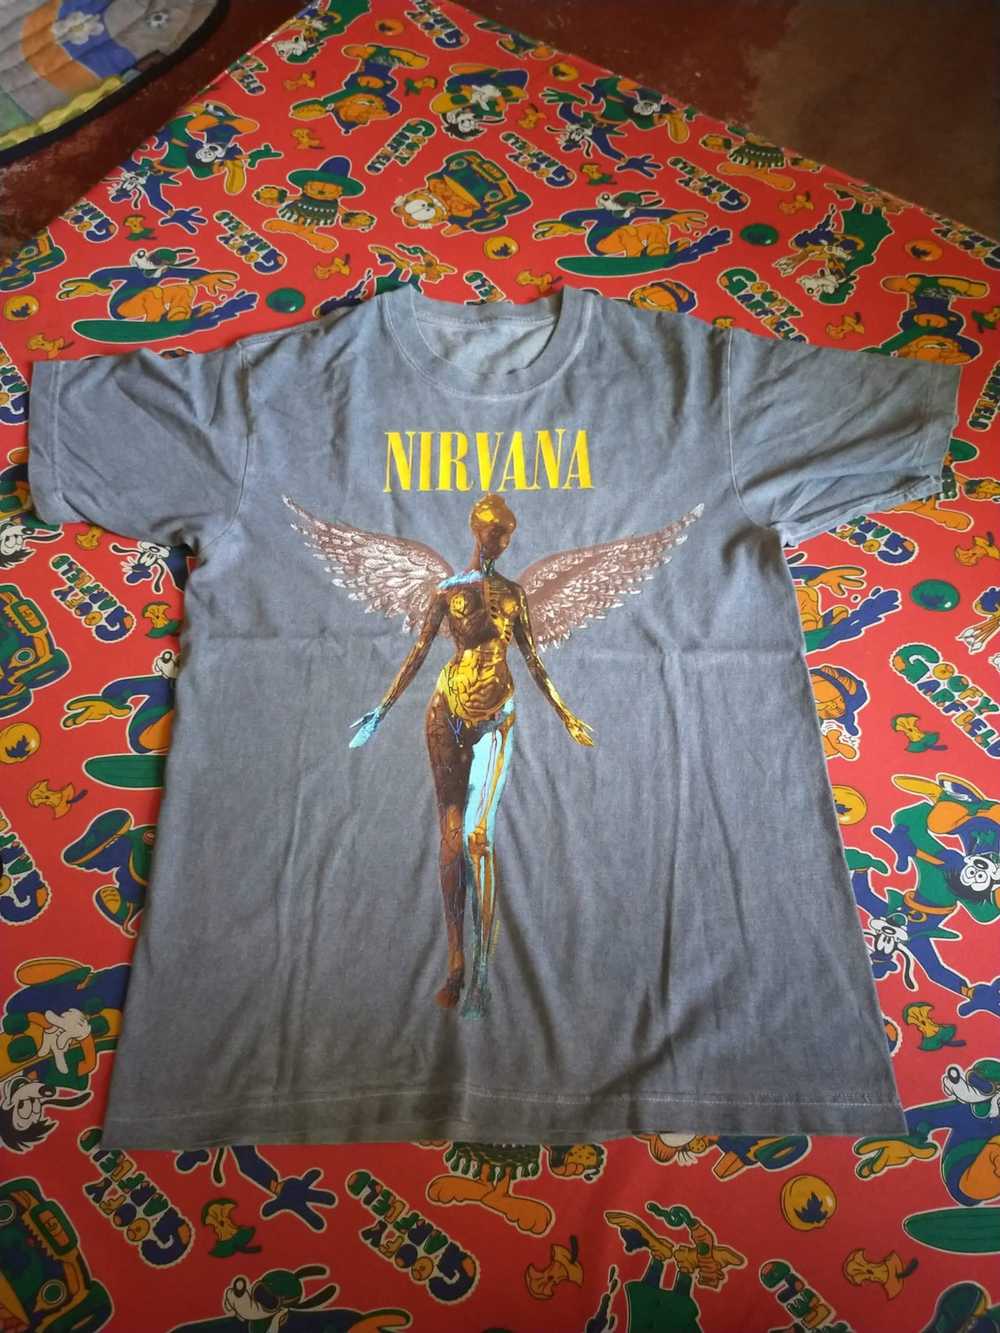 Vintage Nirvana - image 4